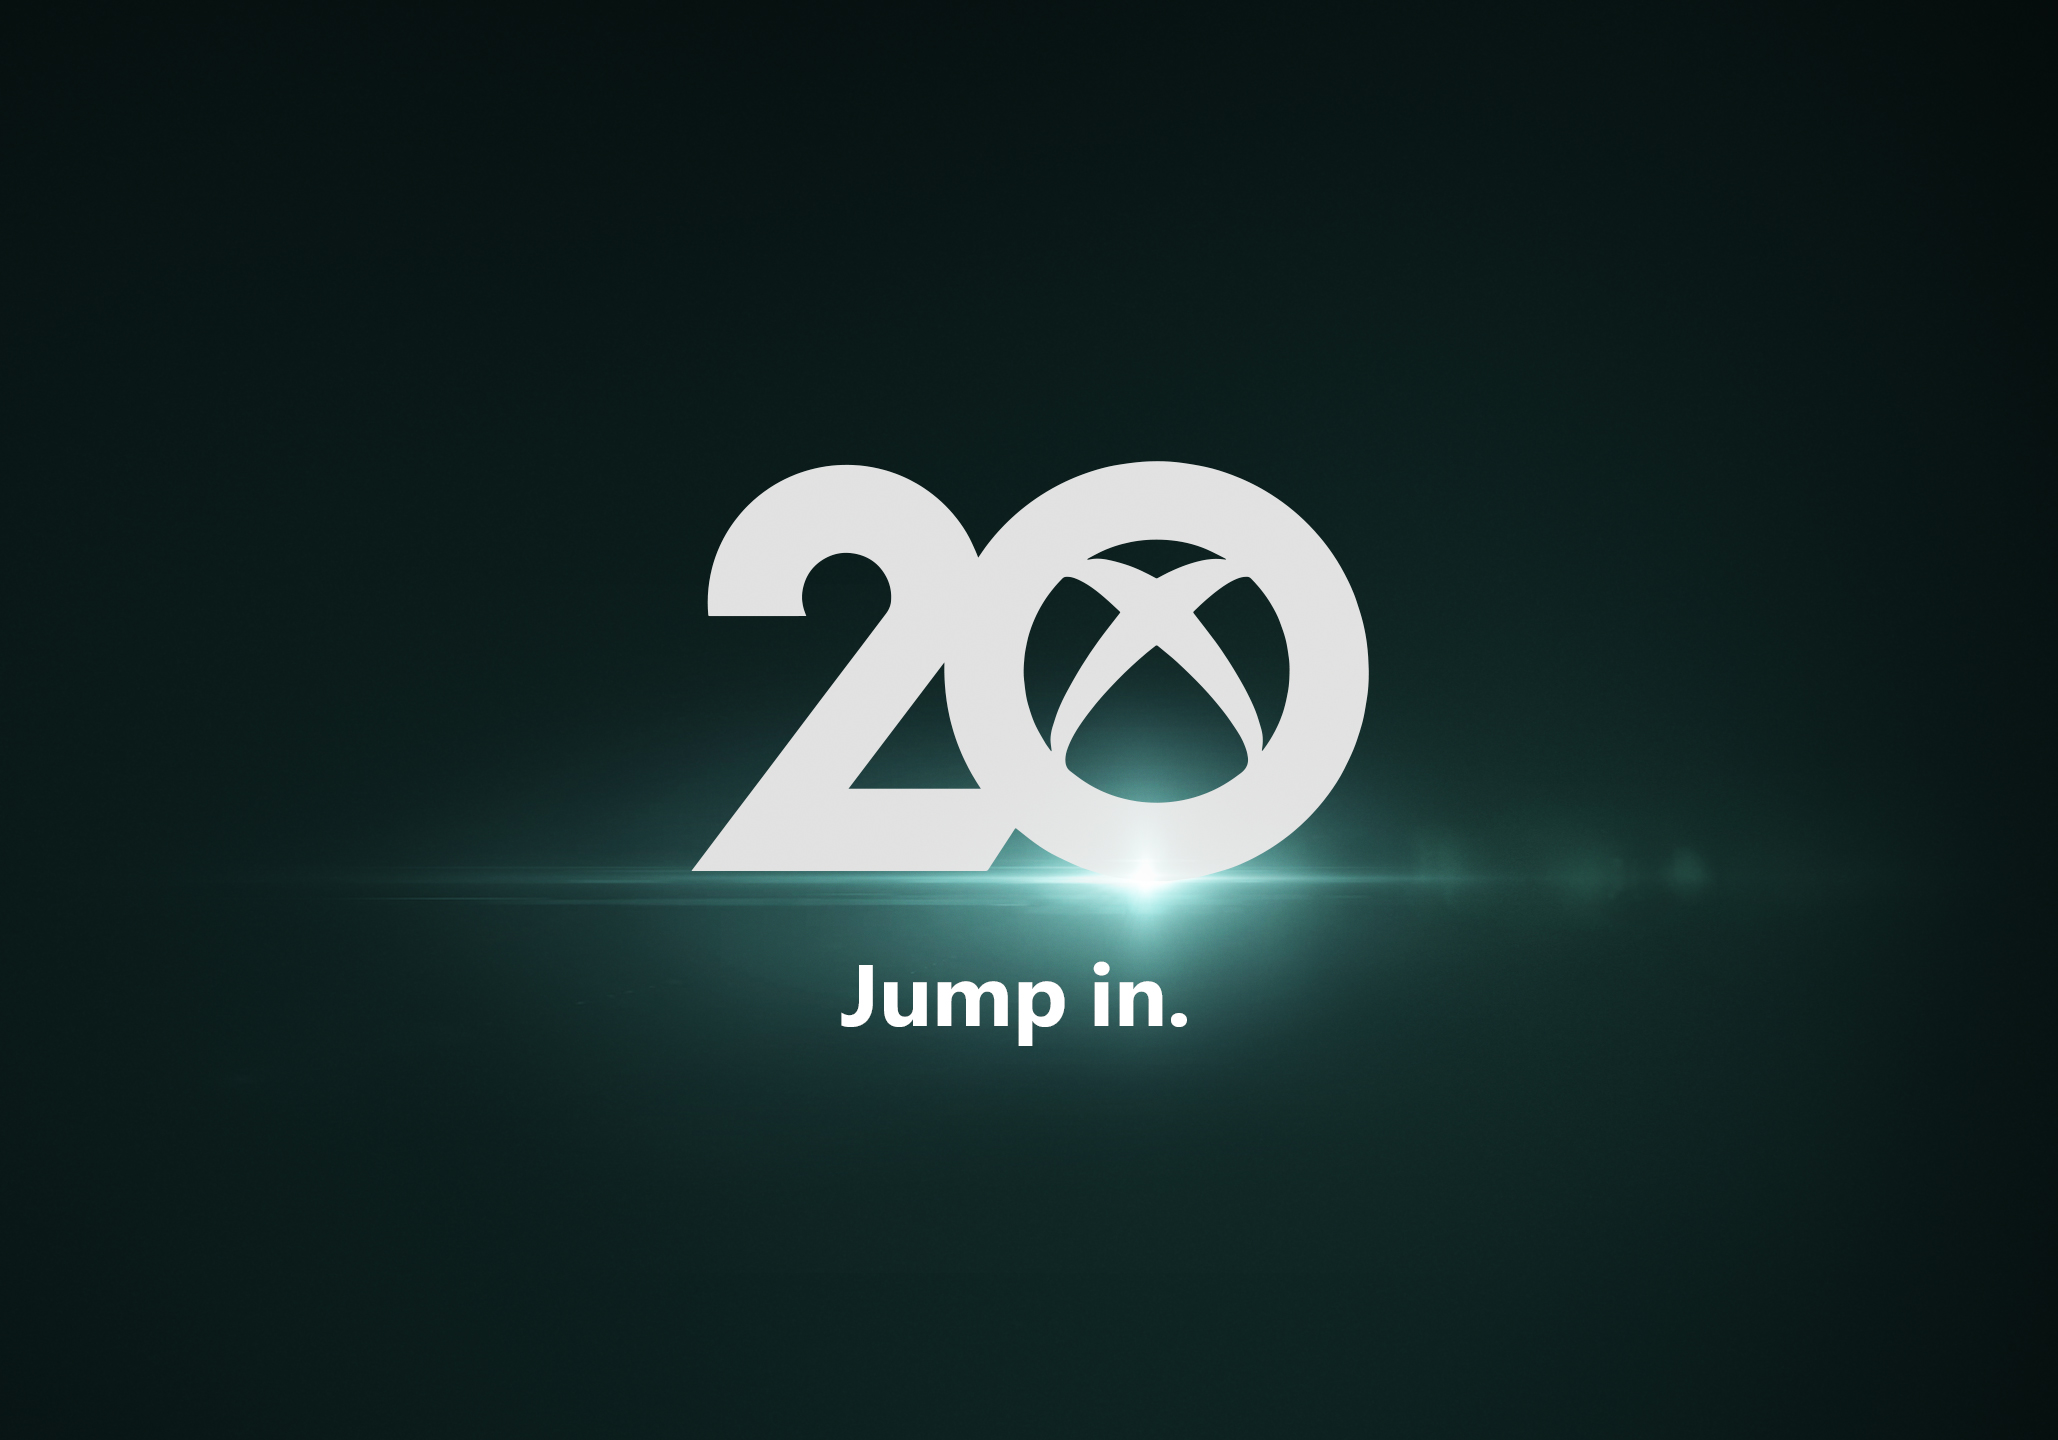 #Xbox20 comienza su celebración por sus 20 años